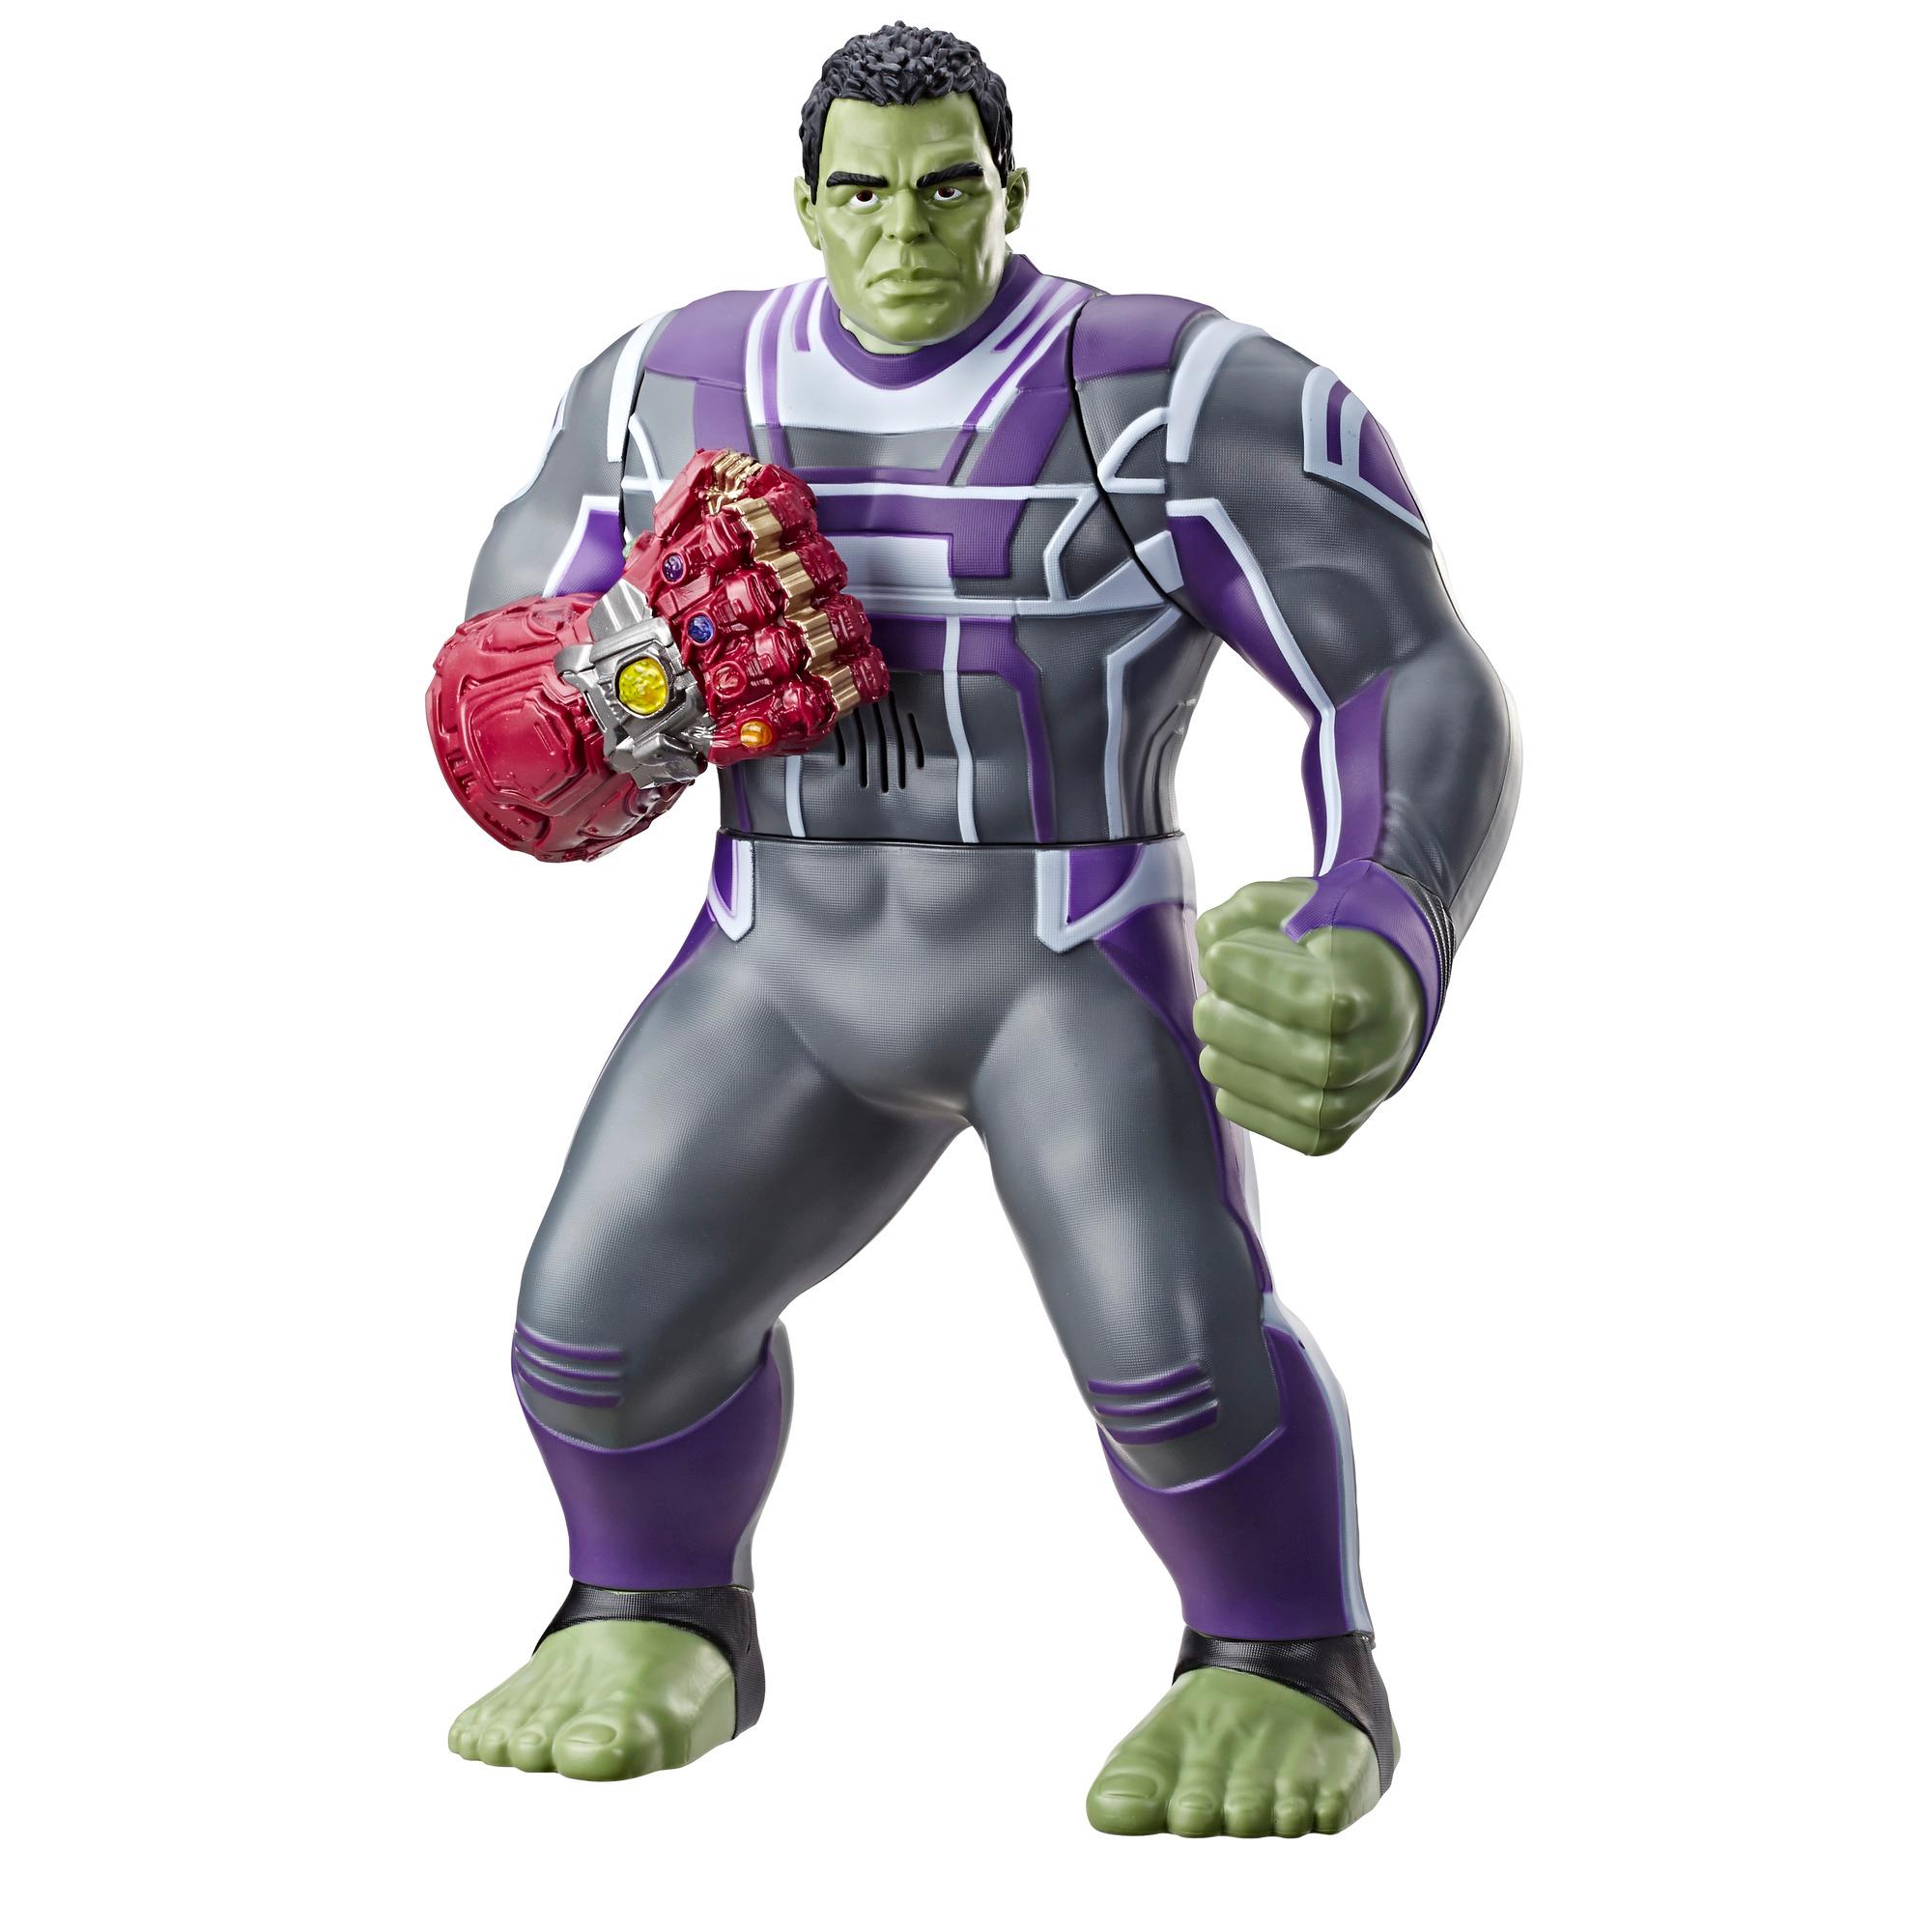 Marvel Avengers: Endgame Power Punch Hulk 13.75-Inch Action Figure